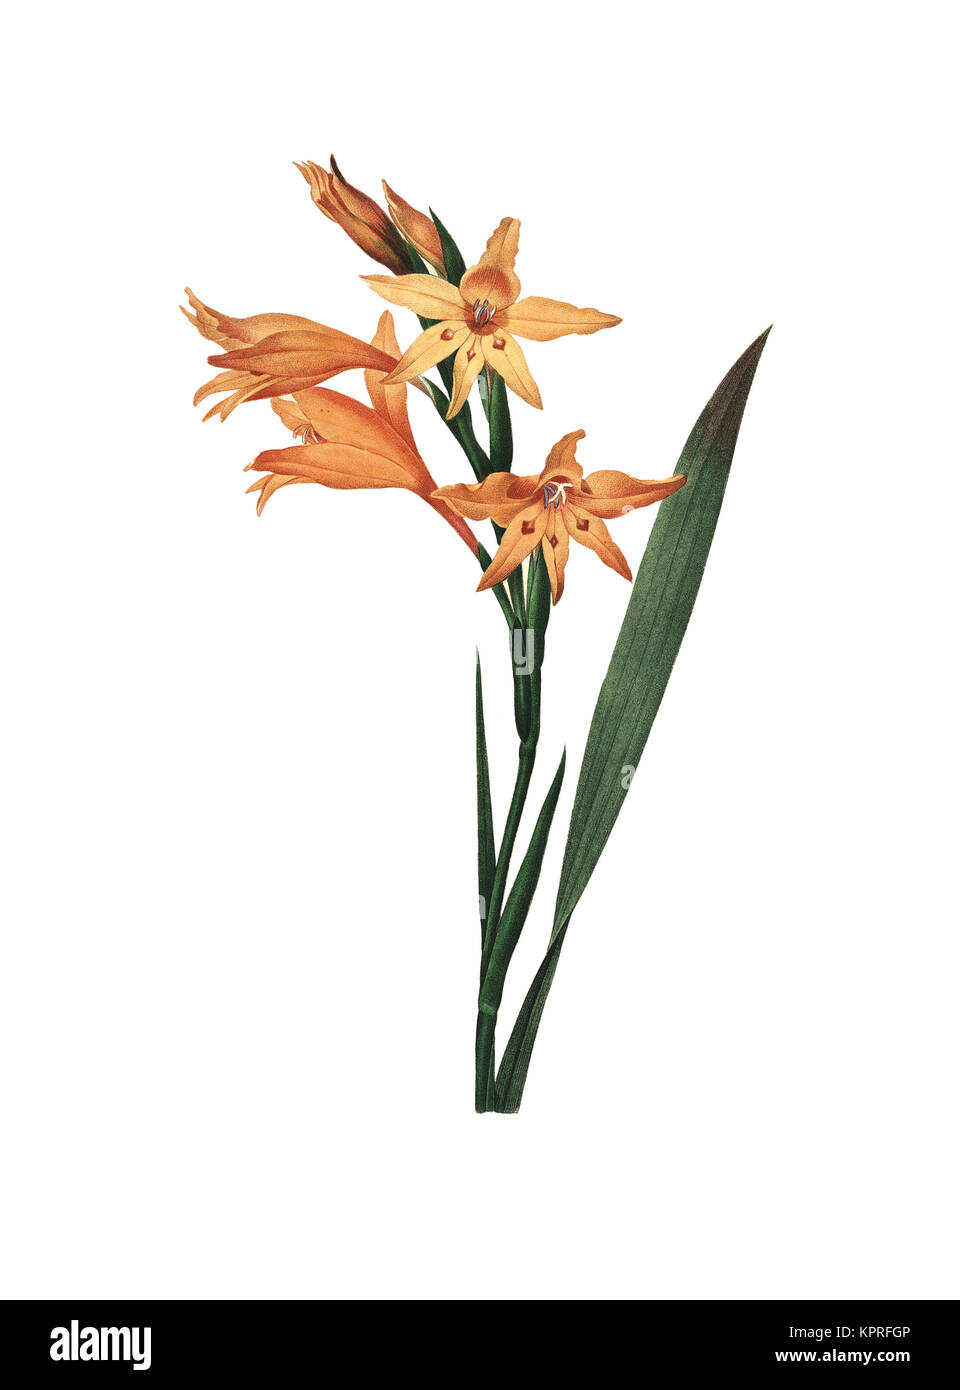 illustration d'une fleur de gladiolus datant du 19th siècle. Gravure de Pierre-Joseph Redoute. Publié dans choix des plus belles fleurs, Paris (1827). Banque D'Images